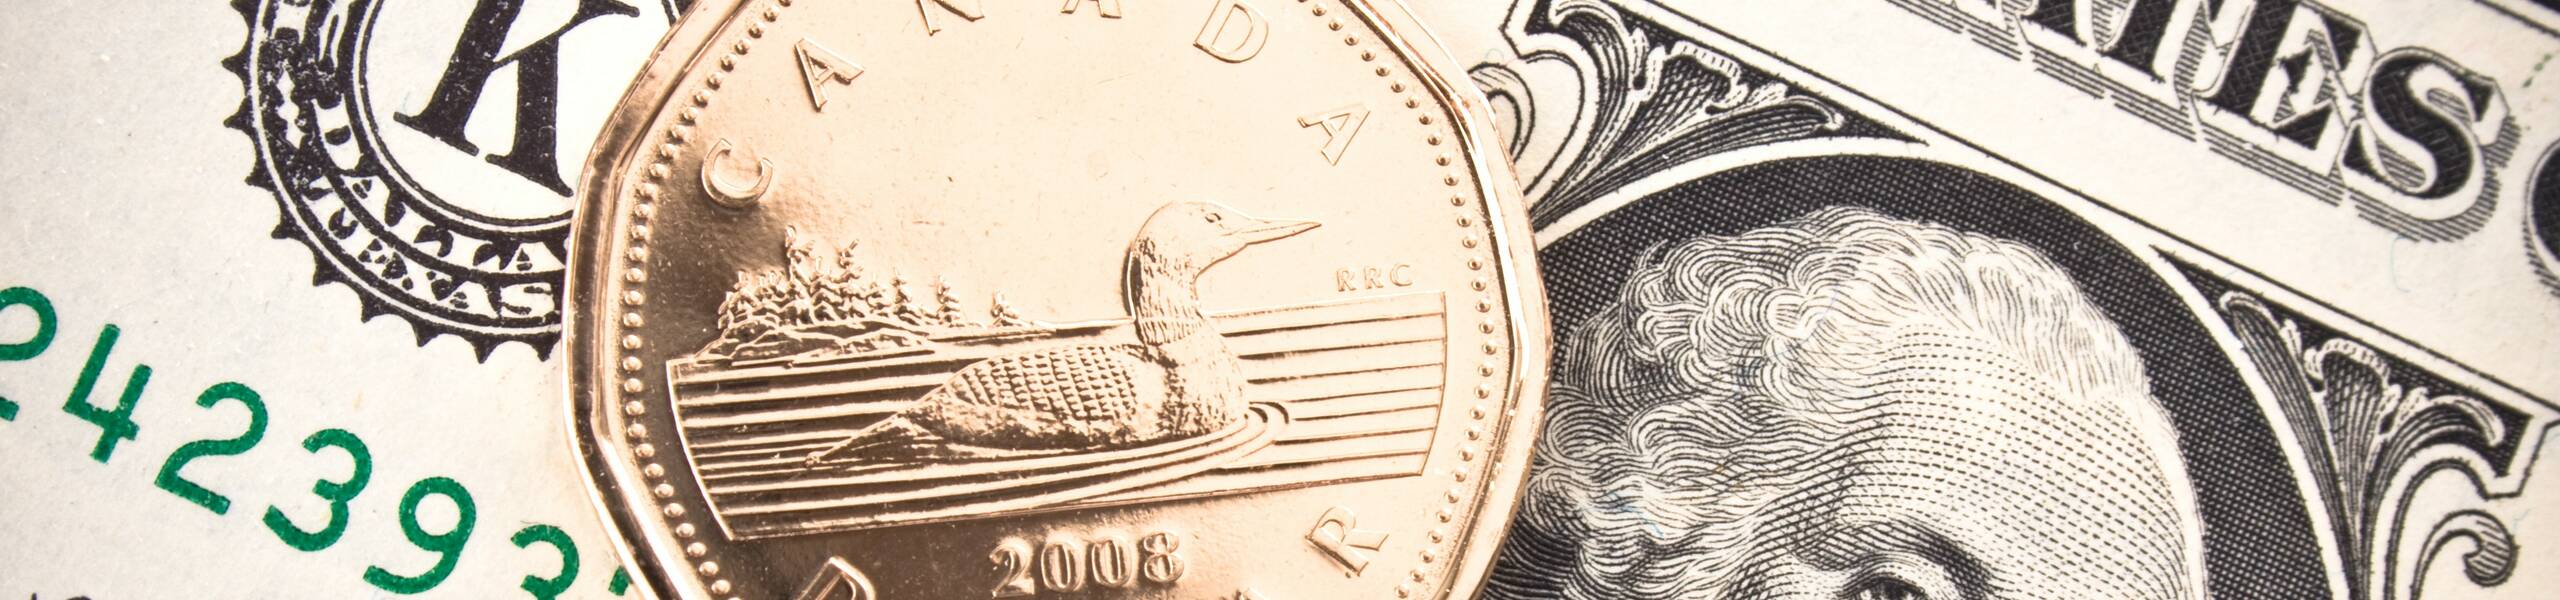 Canadian dollar near-term outlook